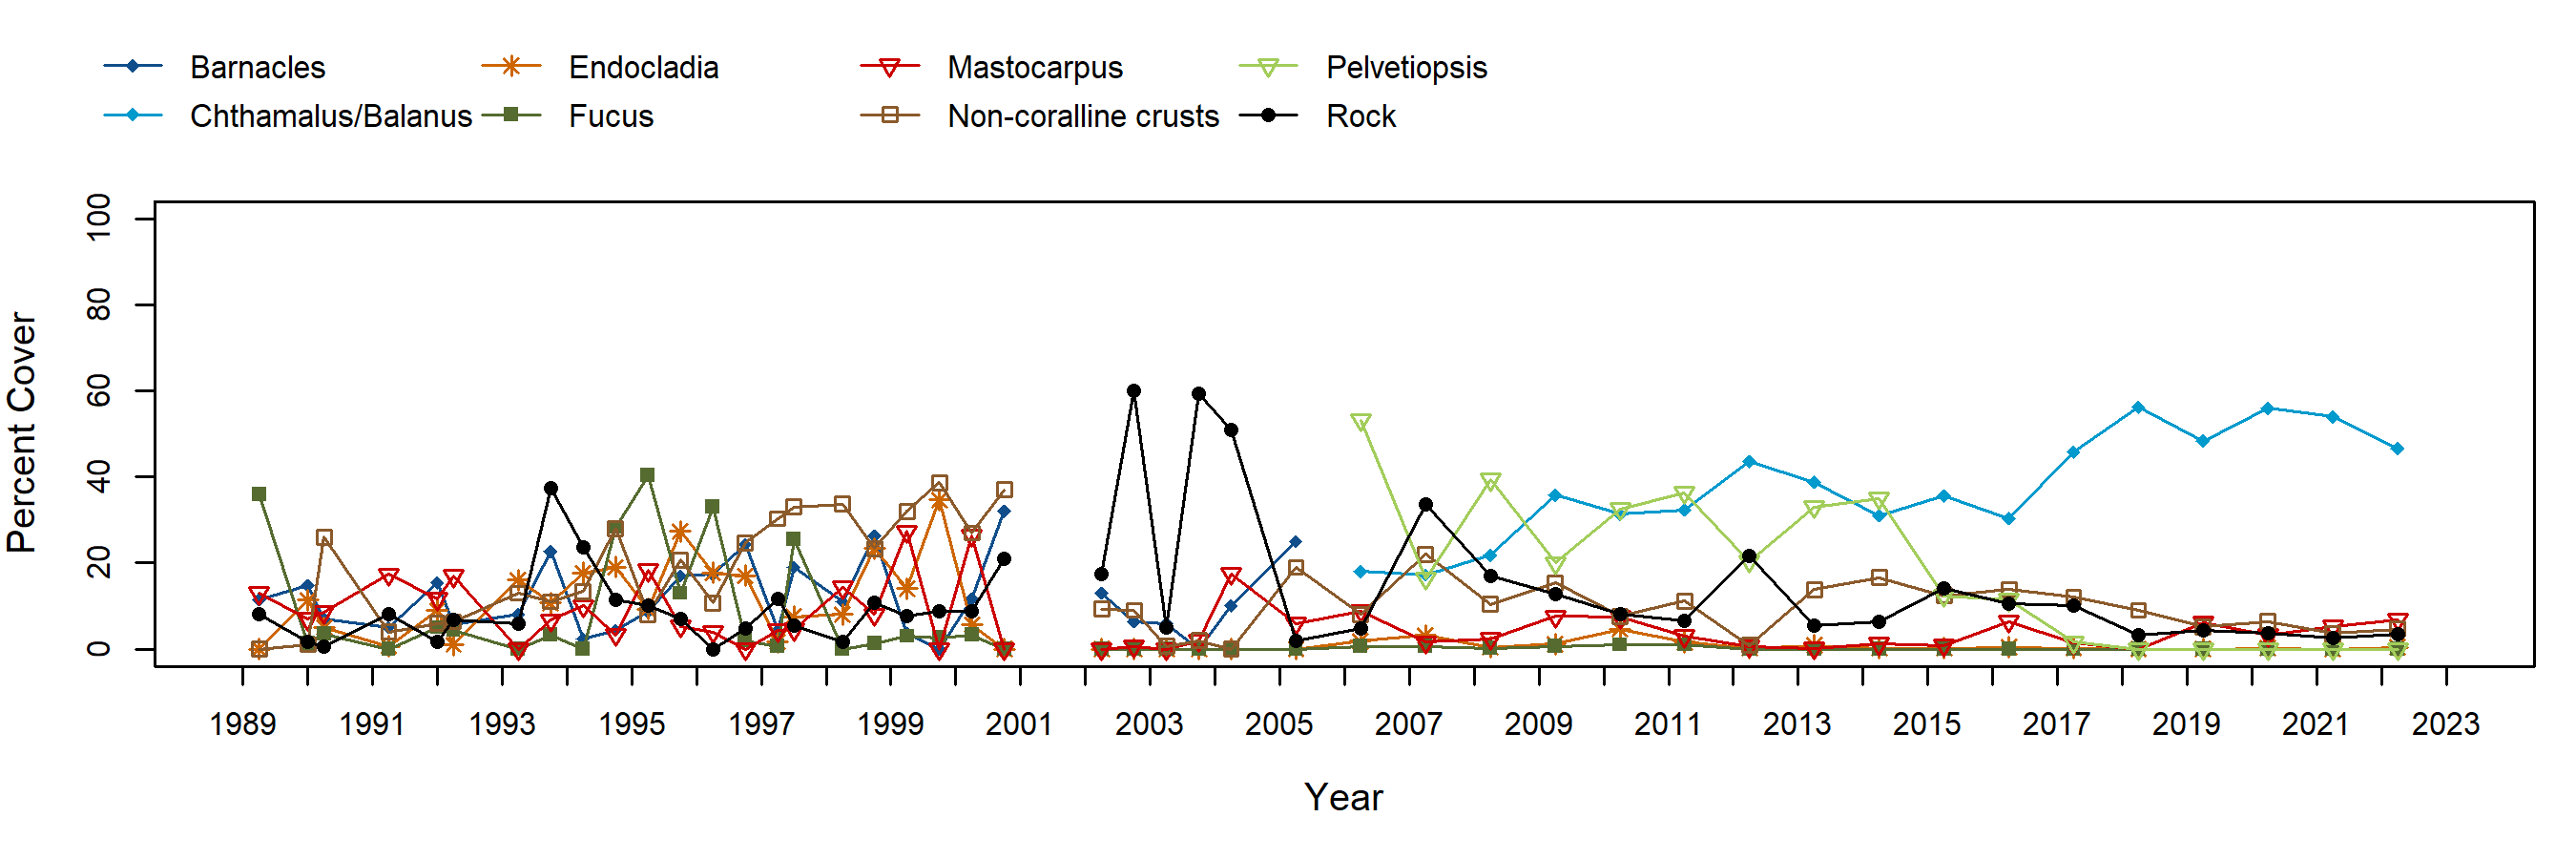 Slide Ranch Pelvetiopsis trend plot